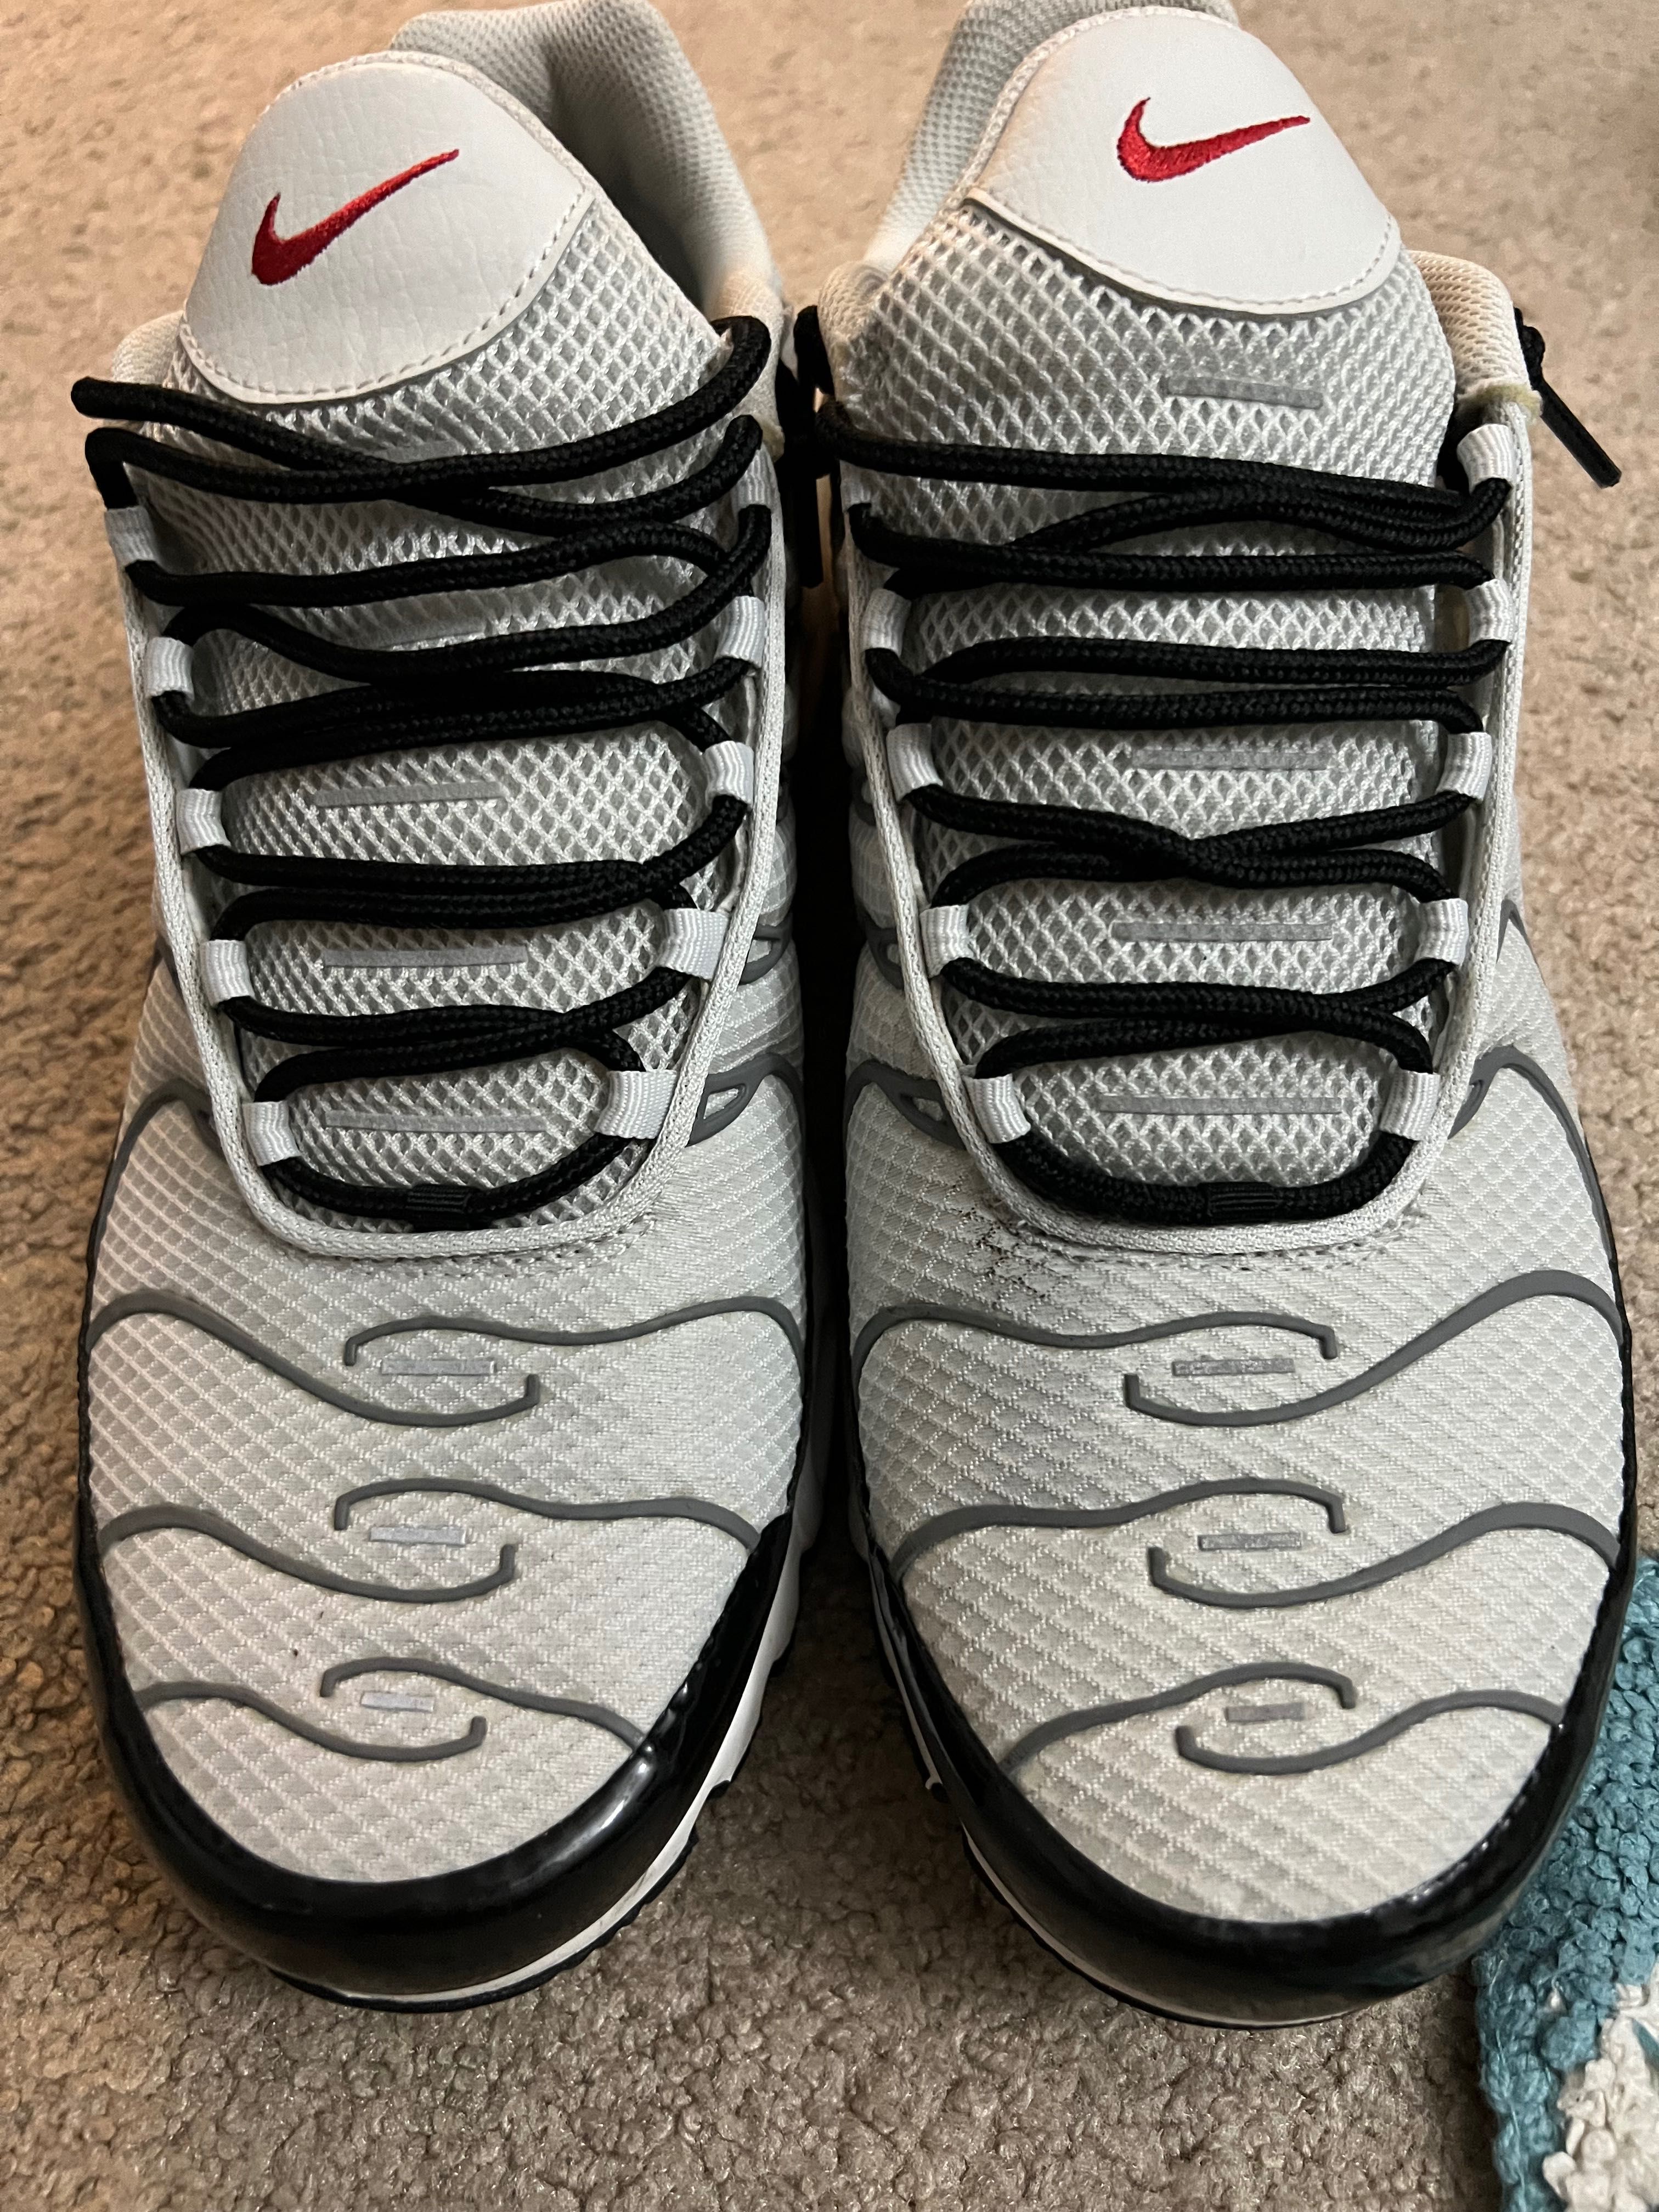 Мужские оригинальные кроссовки Найк Эйр Макс 46 размер